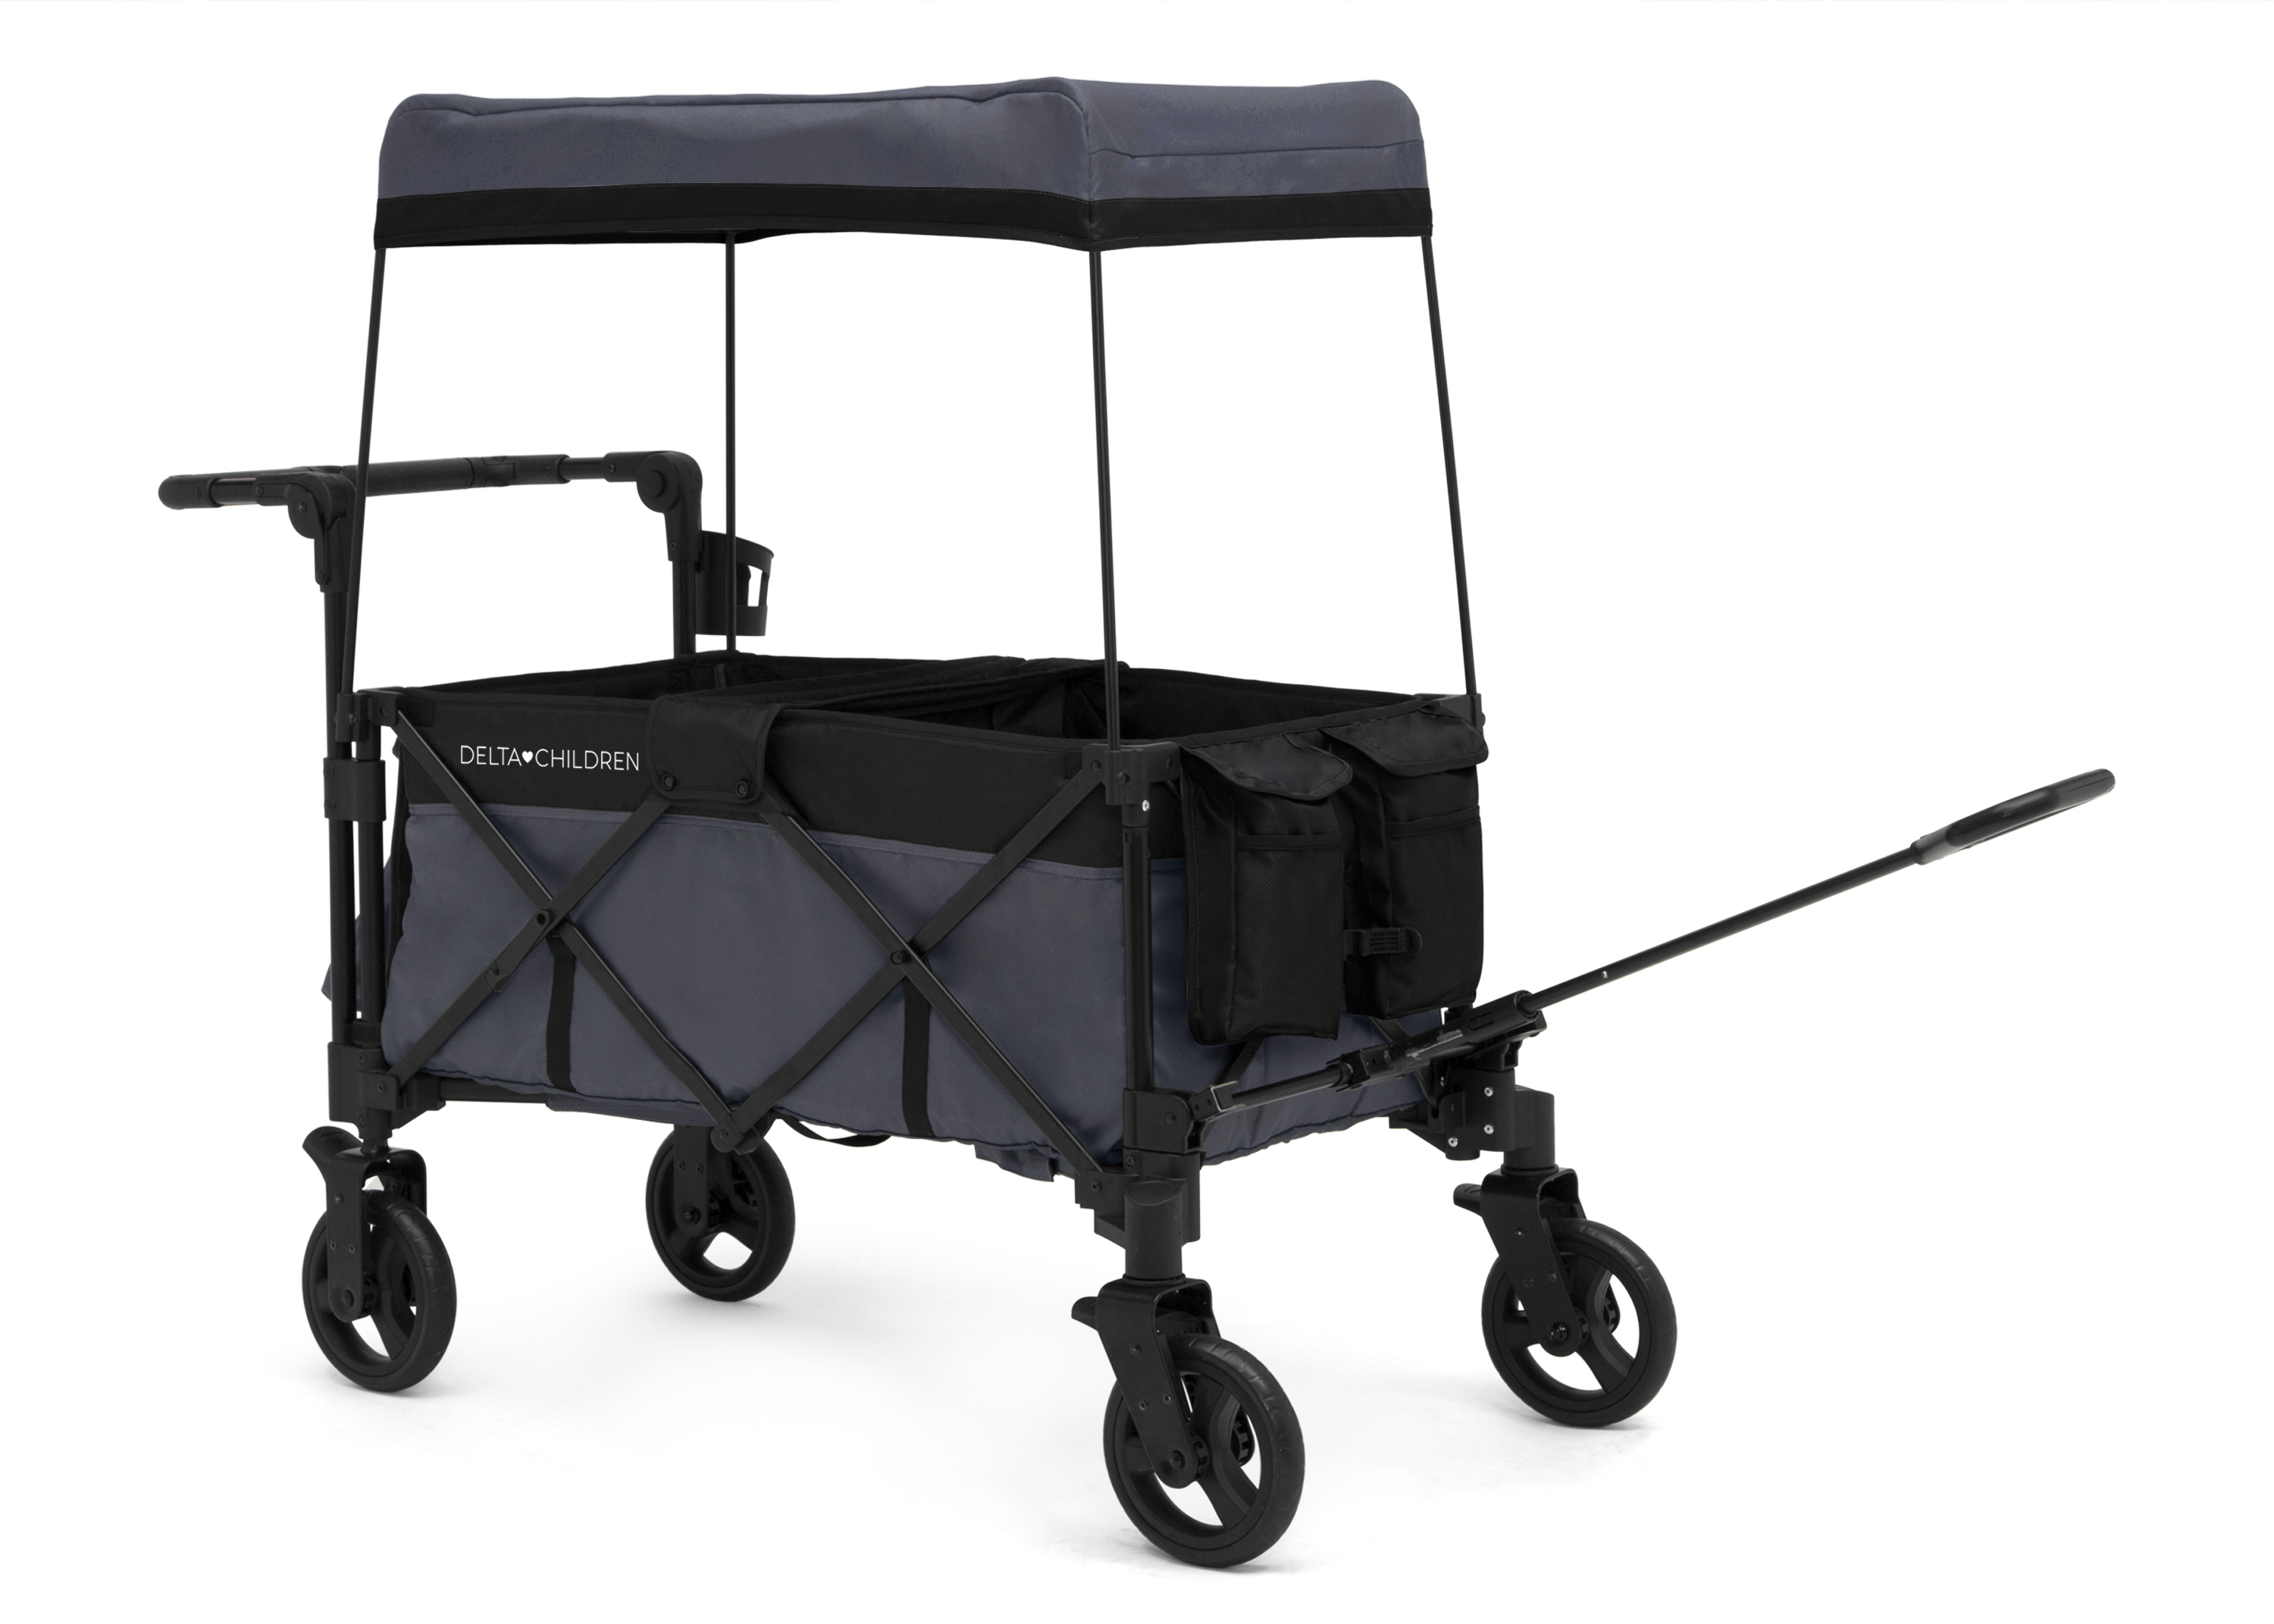 Delta Children Adventure Stroller Wagon, Grey/Black - image 4 of 10